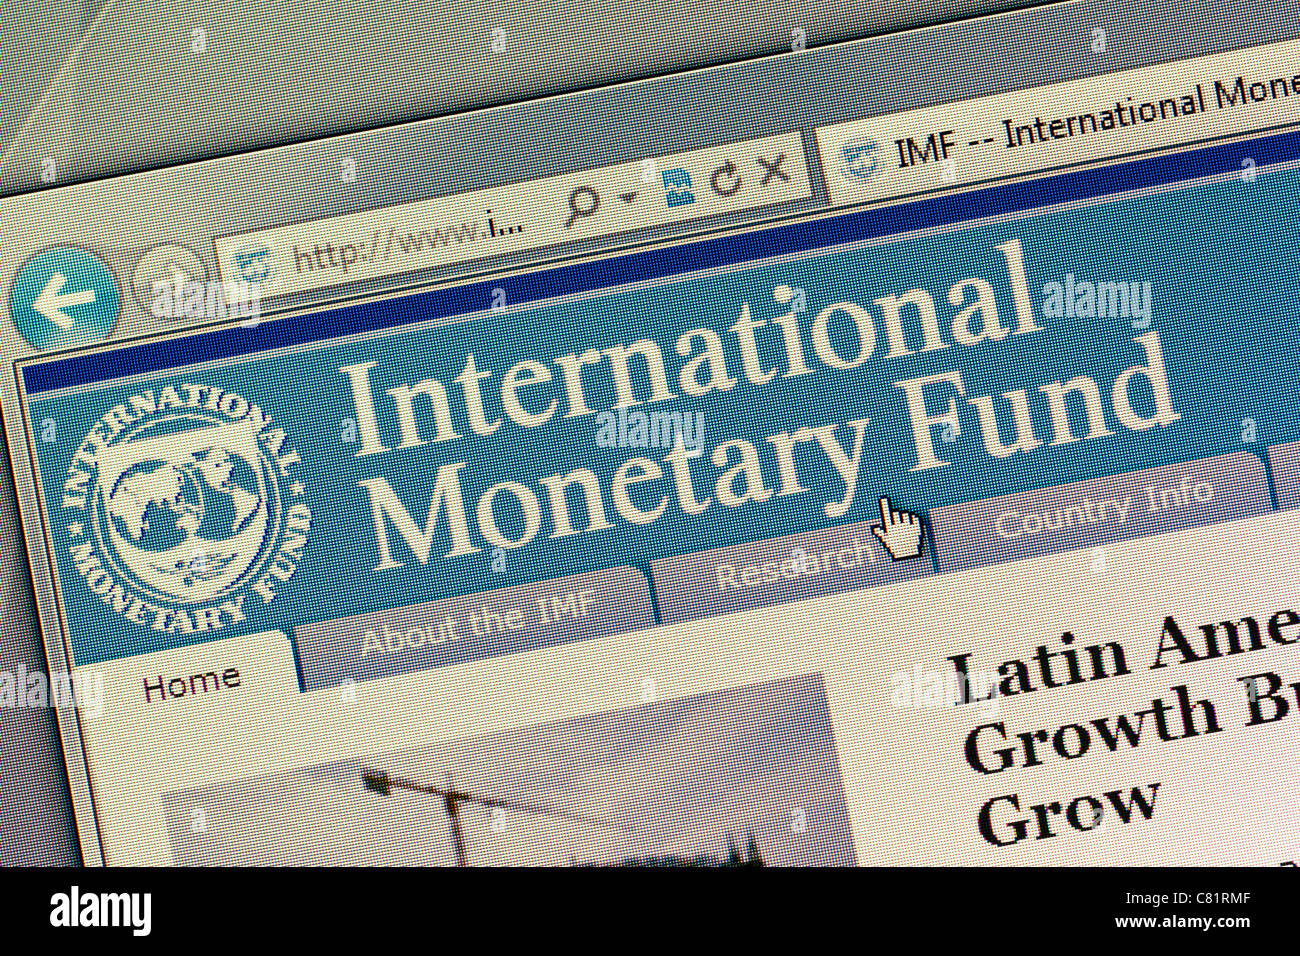 International Monetary Fund IMF logo and website close up Stock Photo